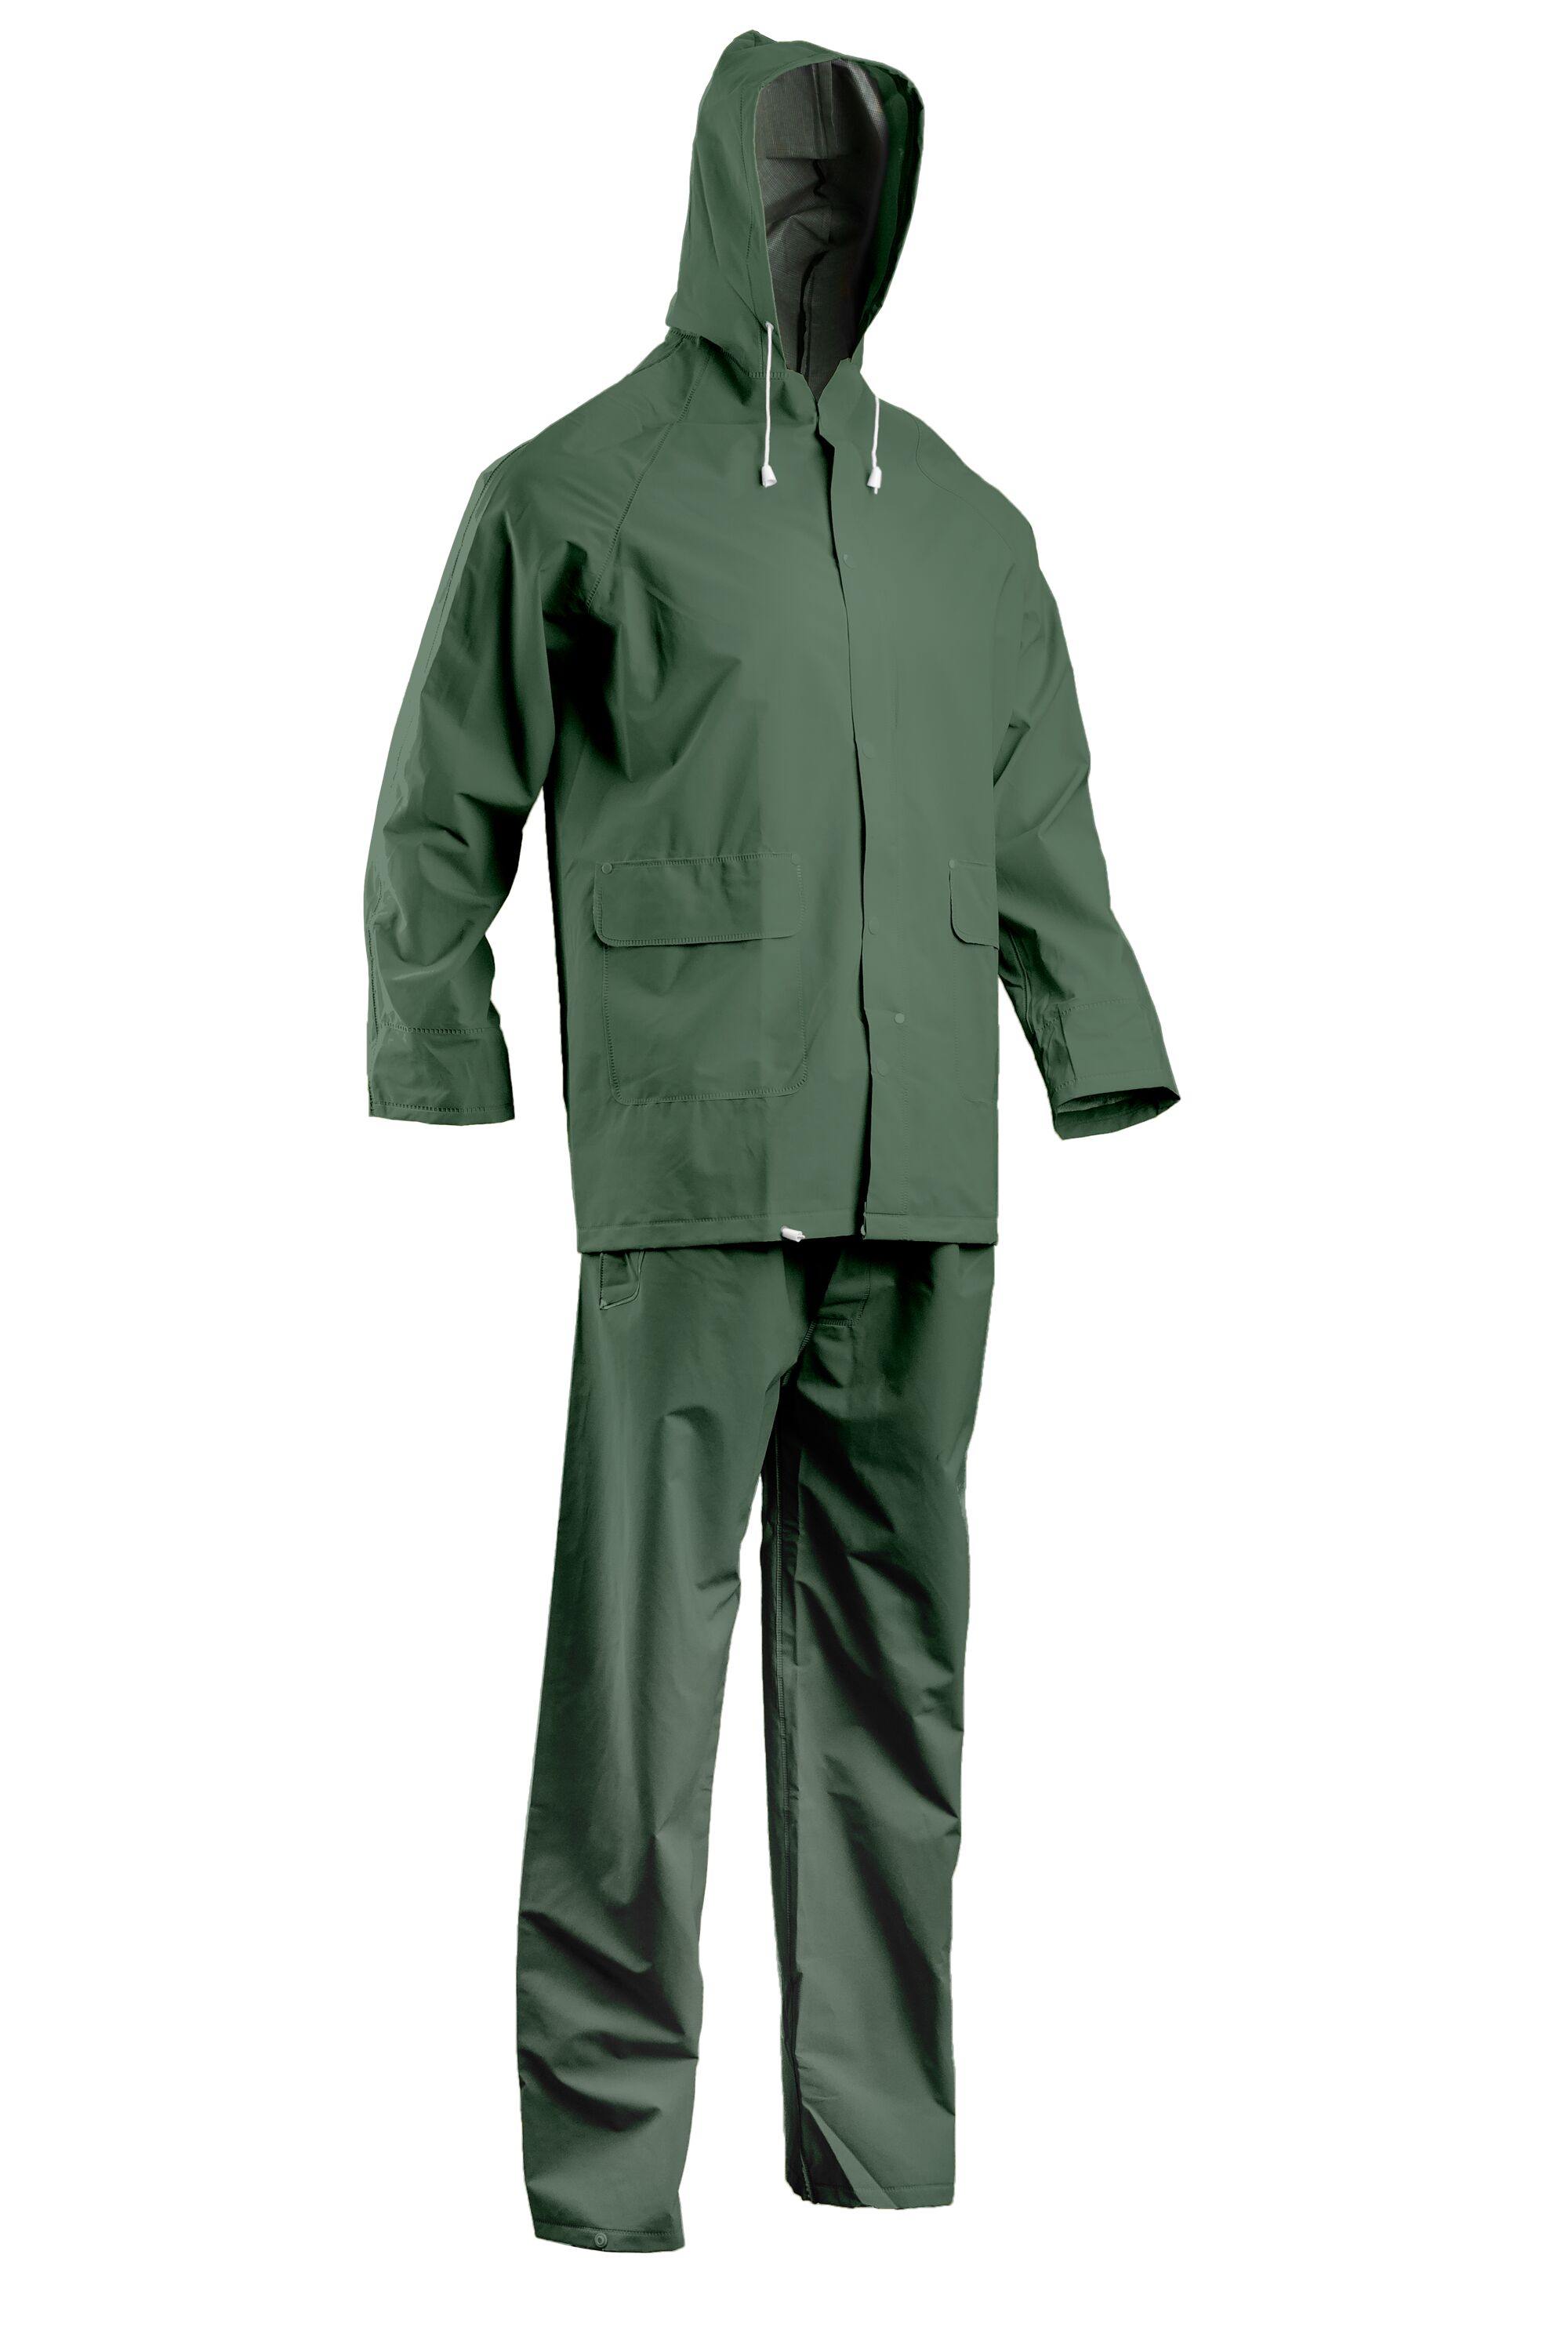 Pantalon imperméable en polyester enduit PVC avec coutures taille XS